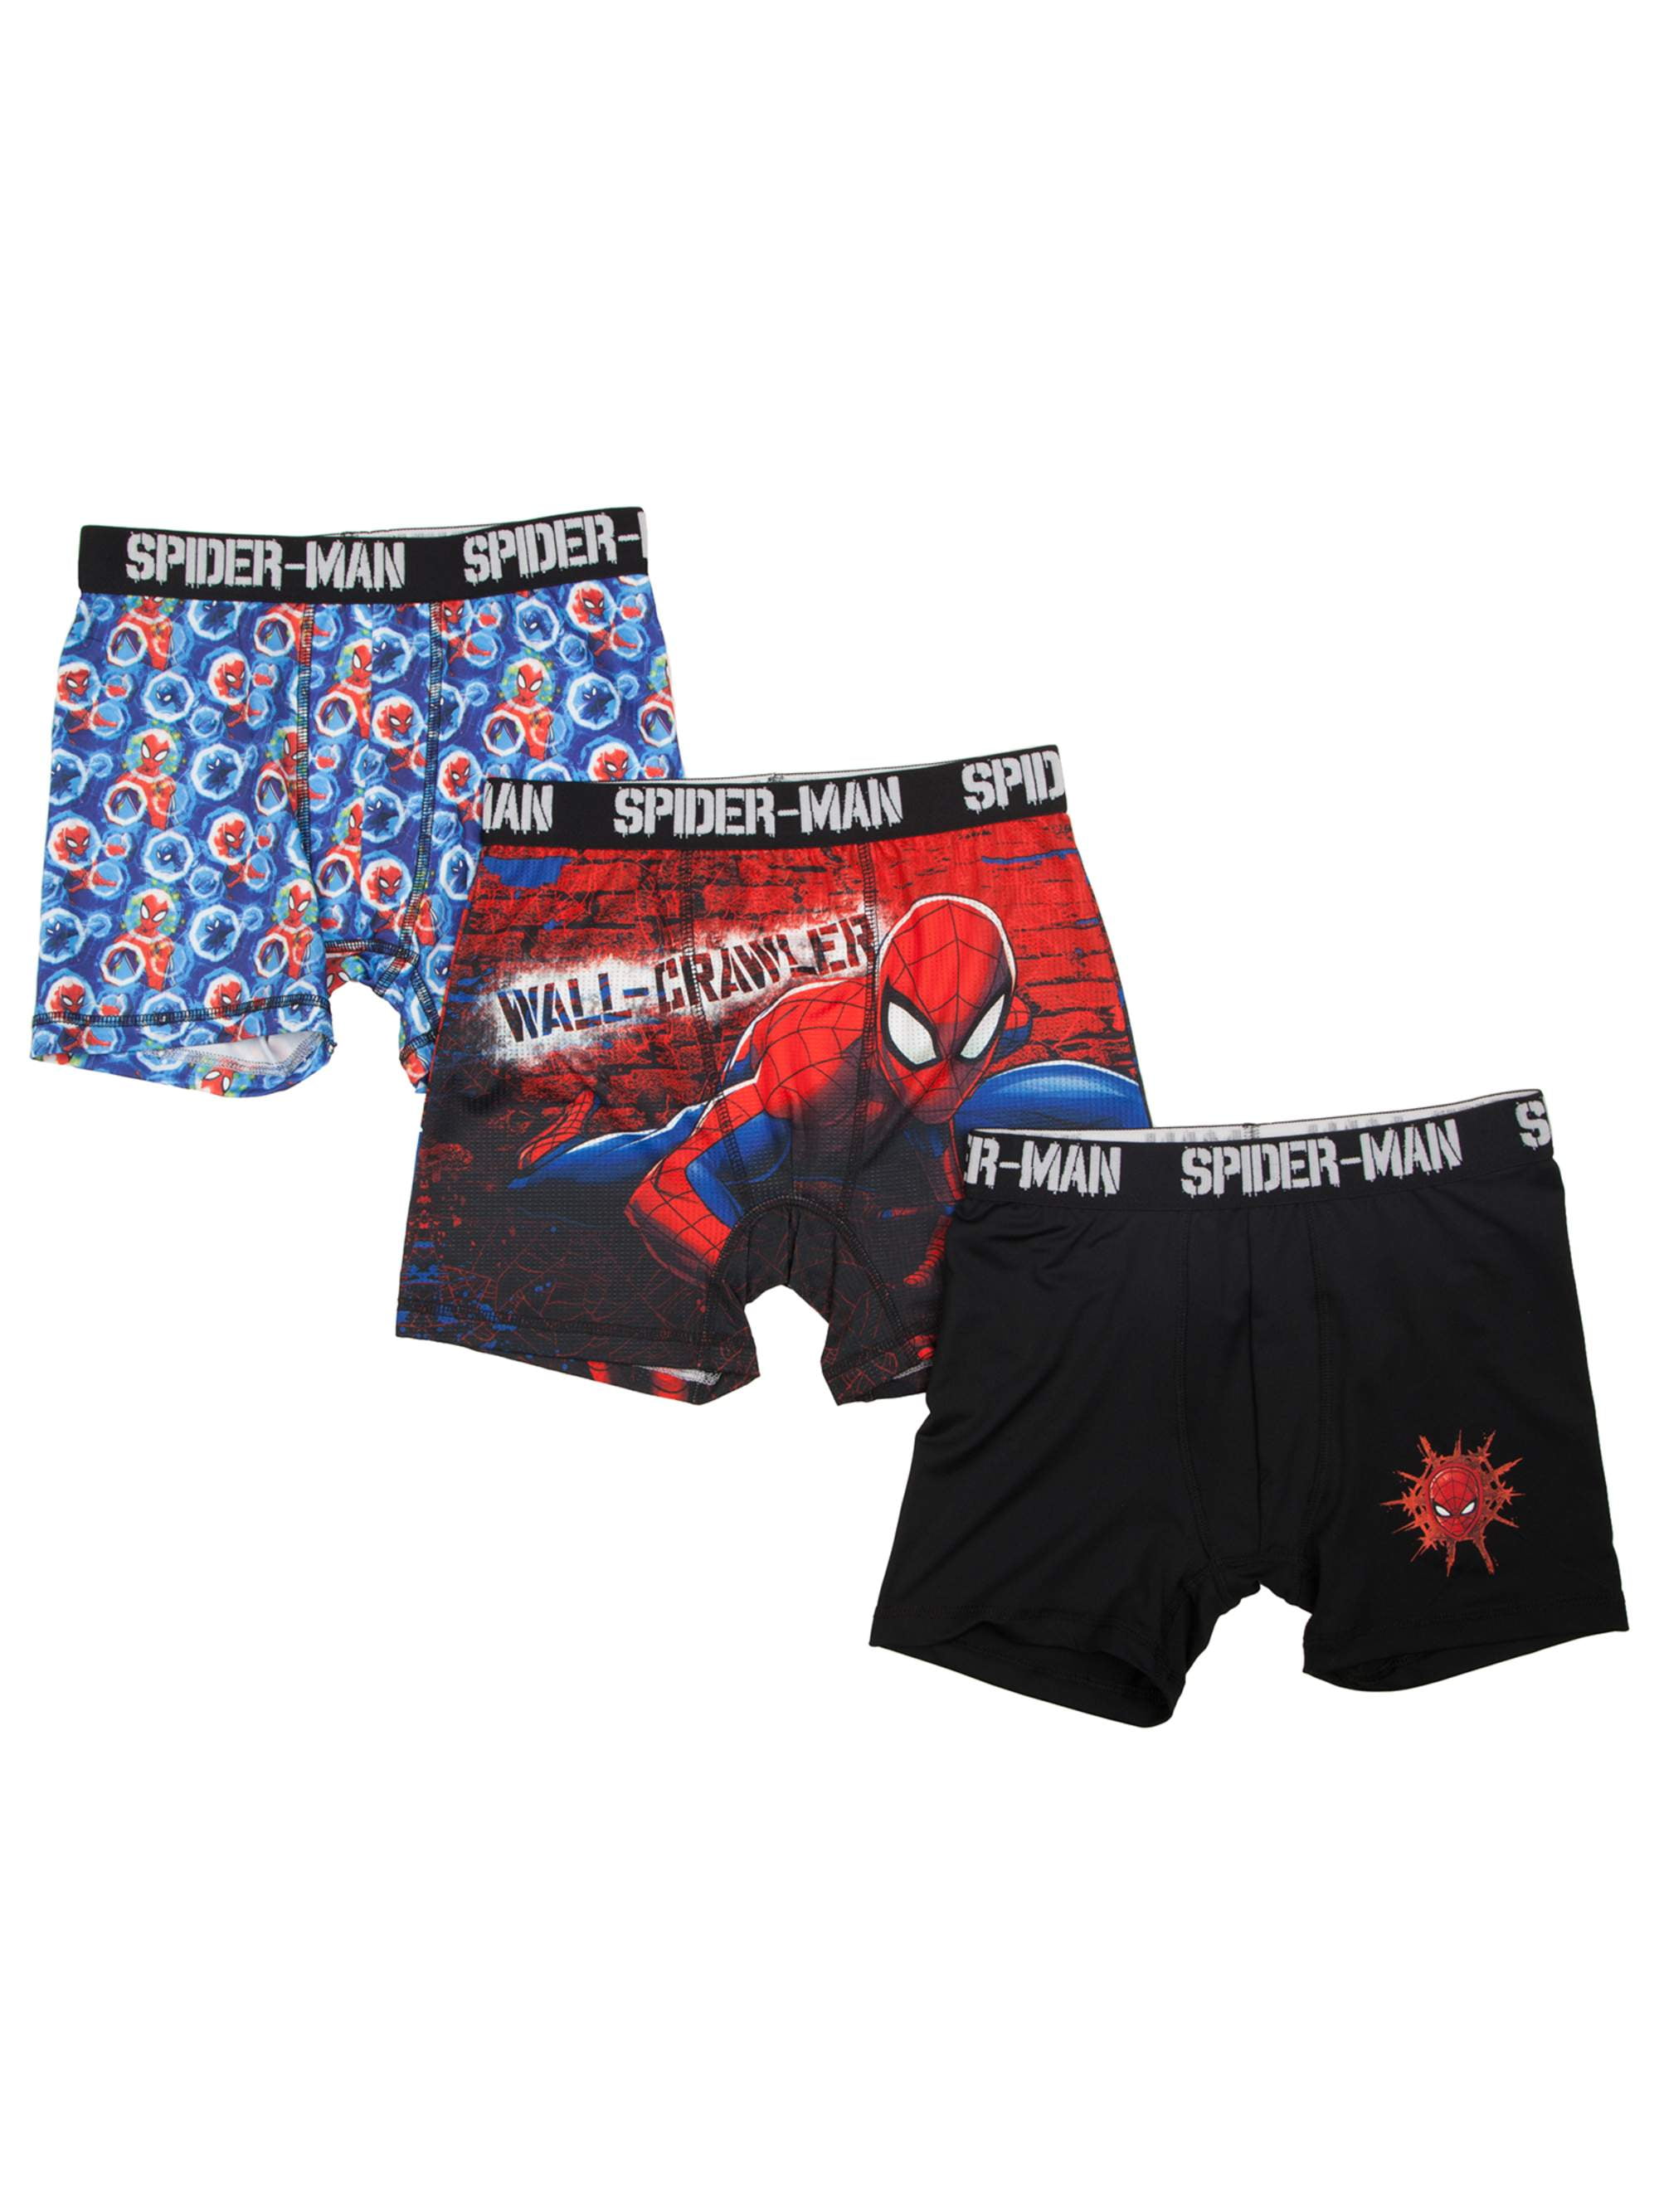 NIP Hanes Marvel Spiderman 100% Cotton Boy's Briefs, 3 Pack